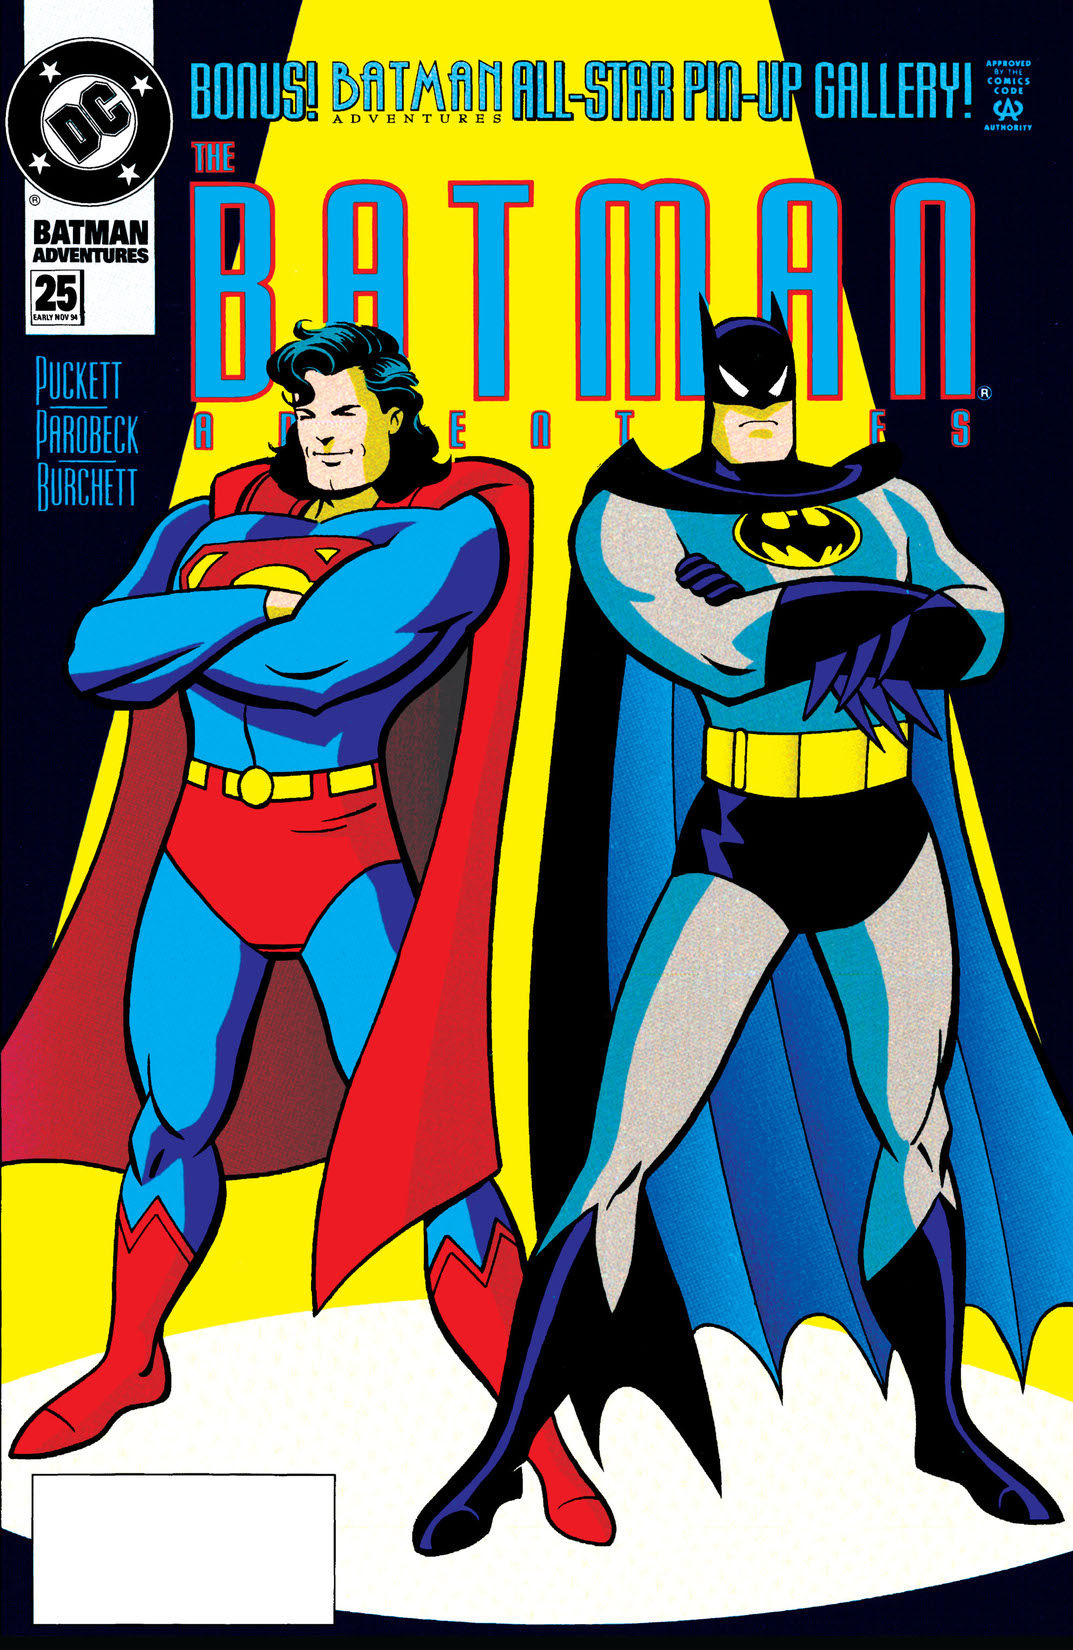 The Batman Adventures #25 preview images